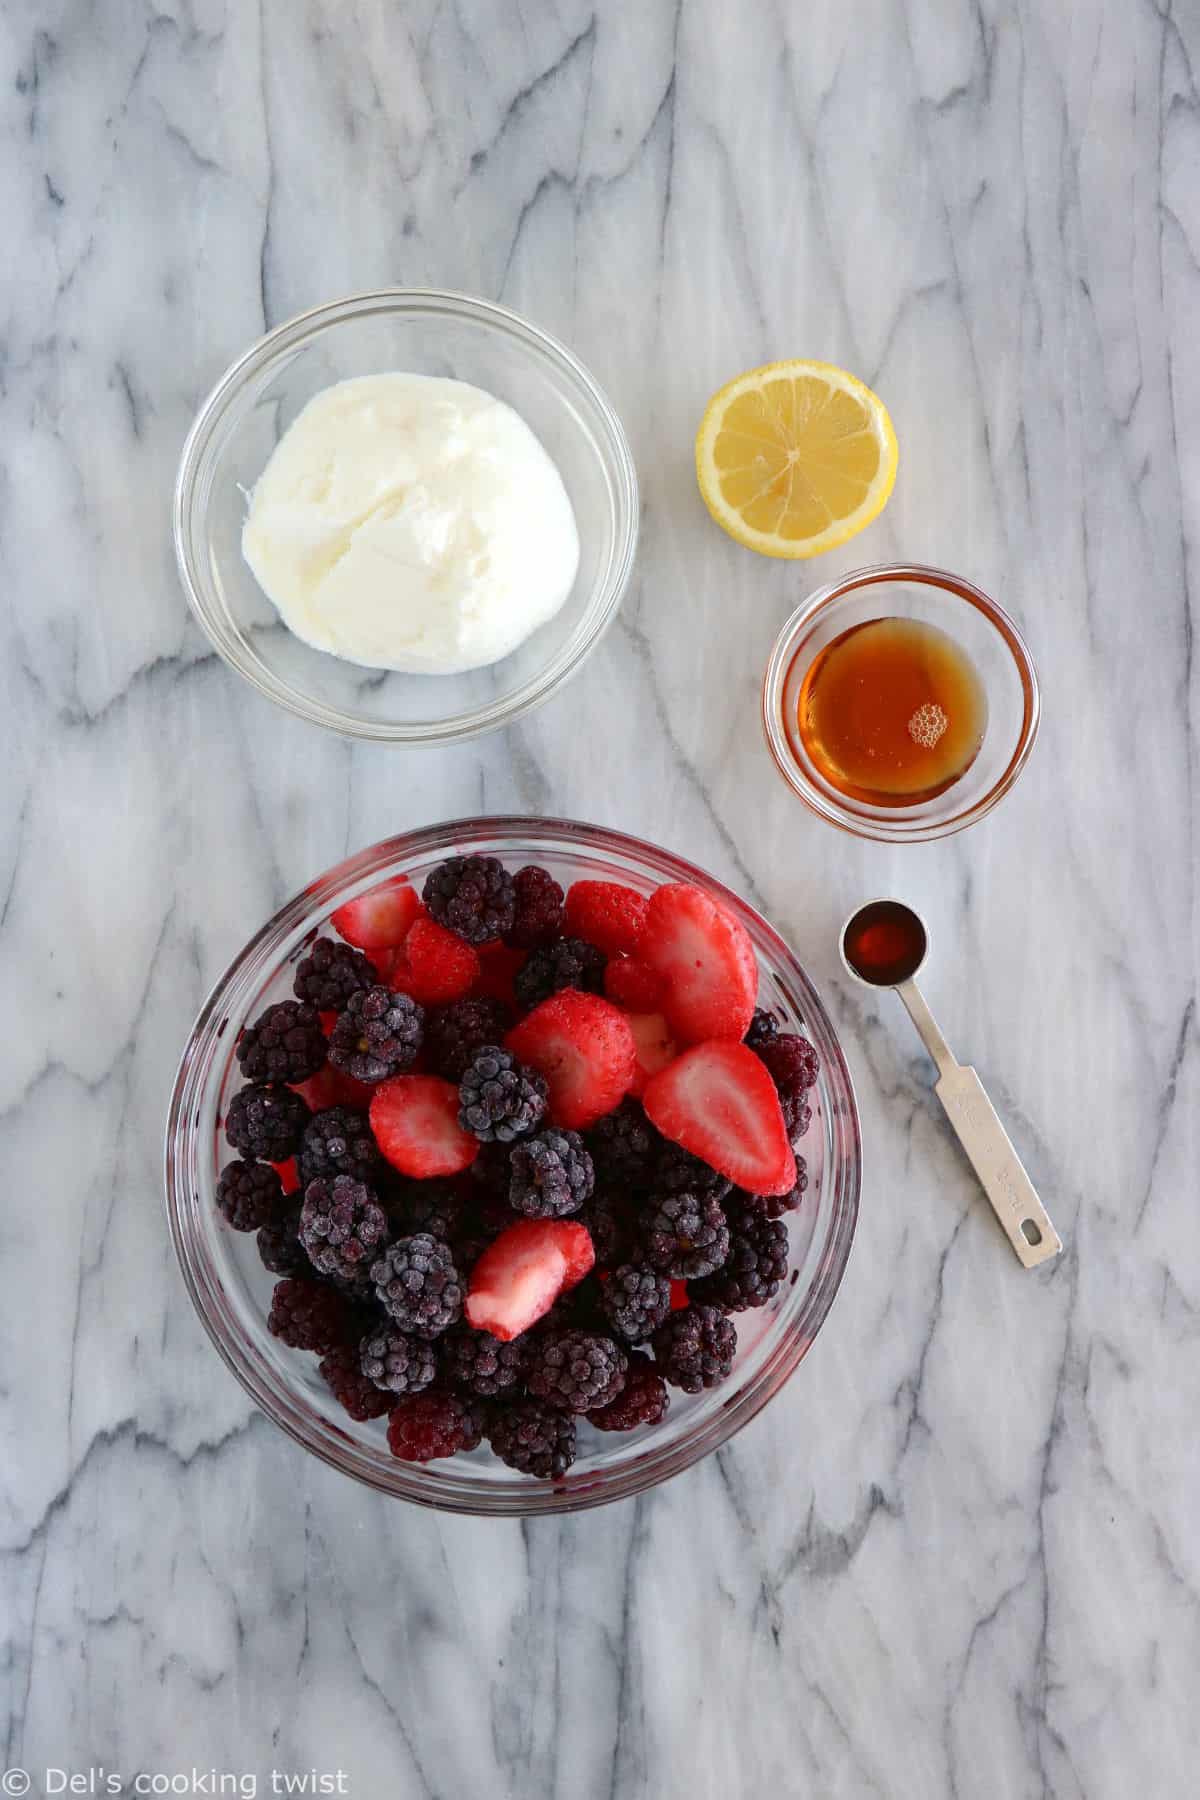 https://www.delscookingtwist.com/wp-content/uploads/2021/07/5-Minute-Berry-Frozen-Yogurt_Ingredients.jpg